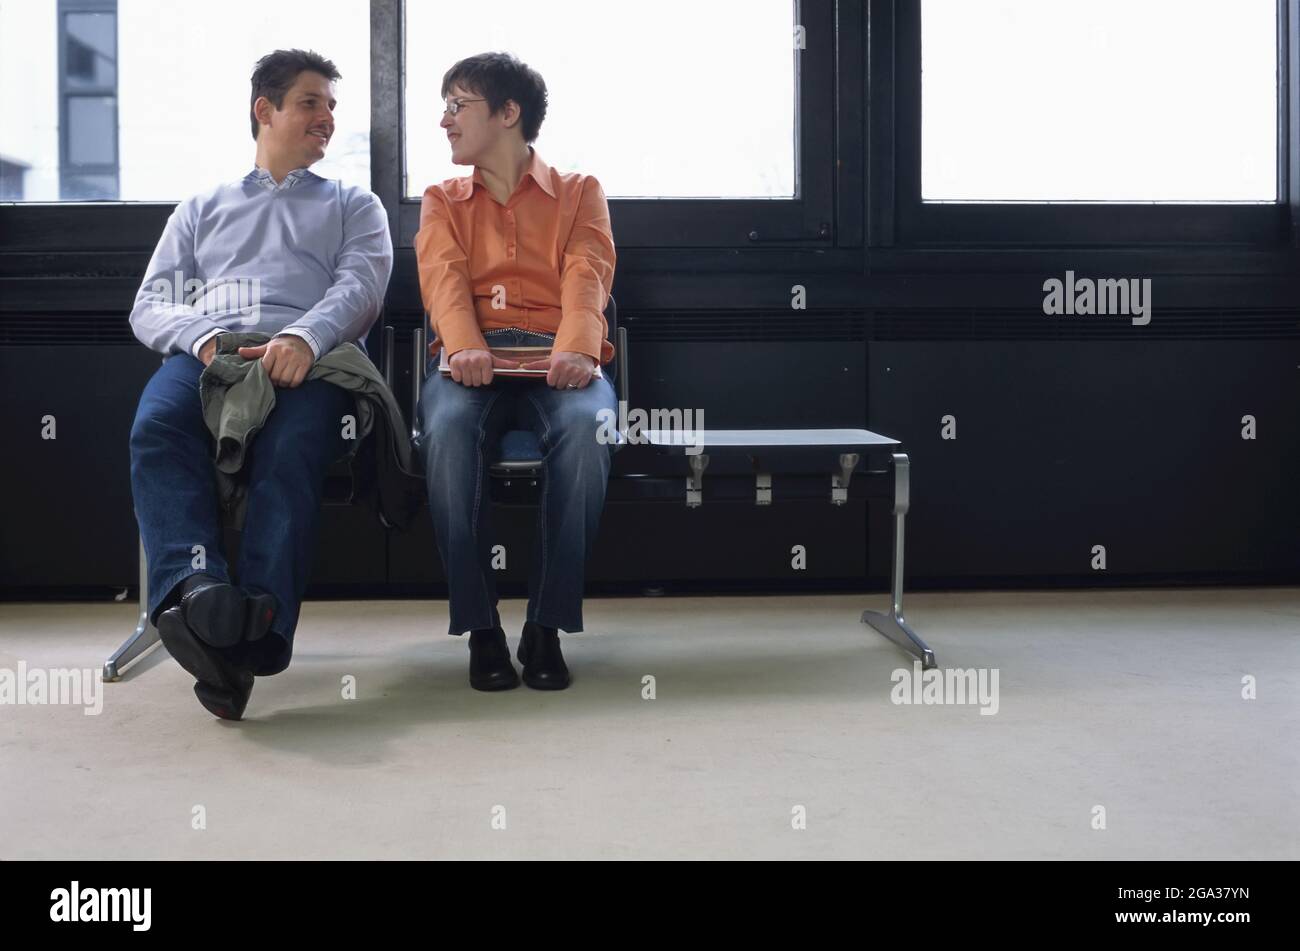 Un hombre y una mujer con necesidades especiales se sientan mirándose unos a otros de una manera coqueteando; Alemania Foto de stock